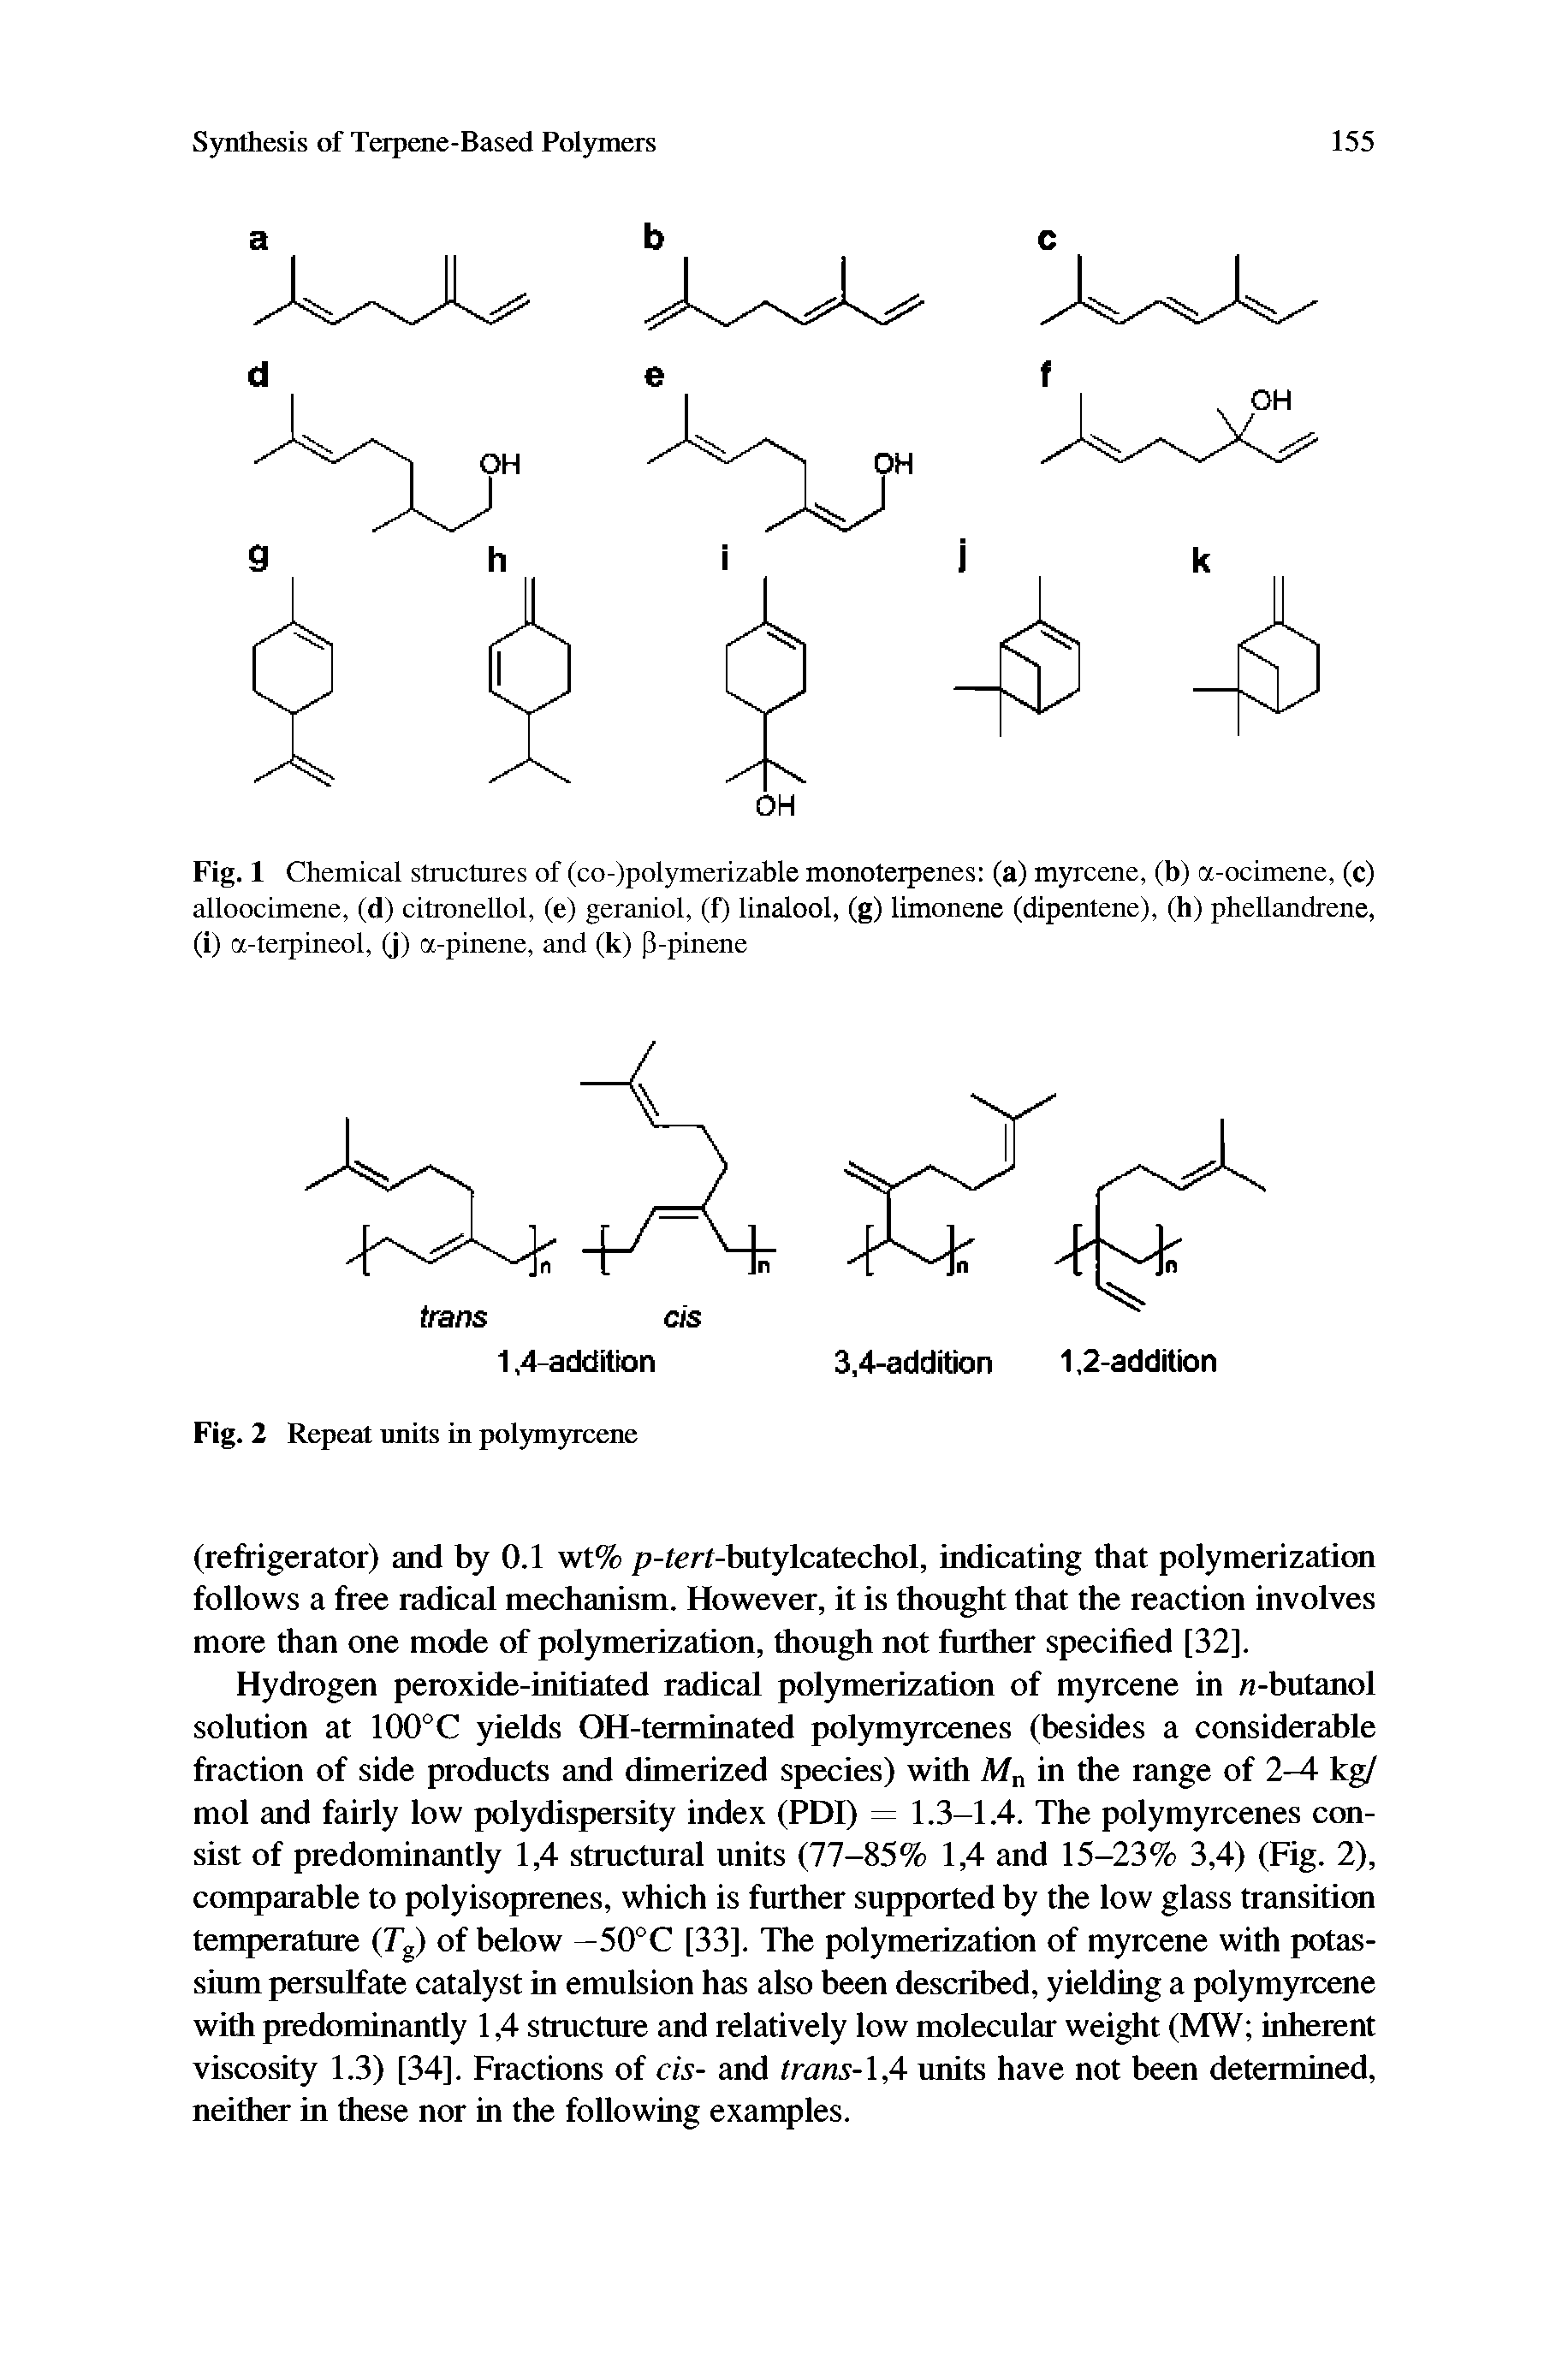 Fig. 1 Chemical structures of (co-)polymerizable monoterpenes (a) myrcene, (b) a-ocimene, (c) alloocimene, (d) citronellol, (e) geraniol, (f) linalool, (g) limonene (dipentene), (h) phellandrene, (i) a-terpineol, (j) a-pinene, and (k) P-pinene...